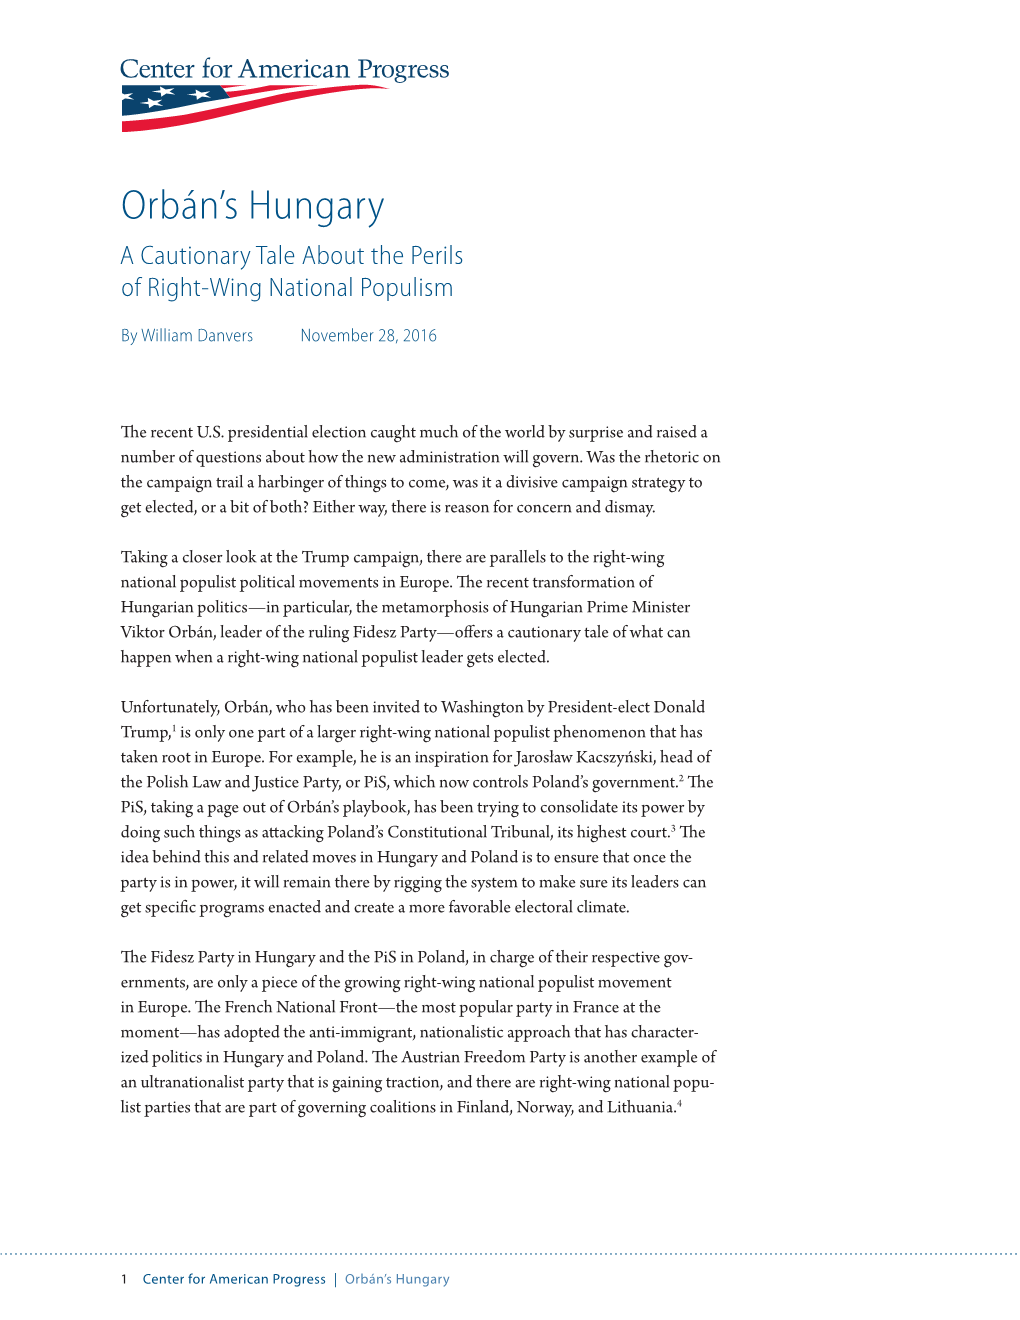 Orbán's Hungary